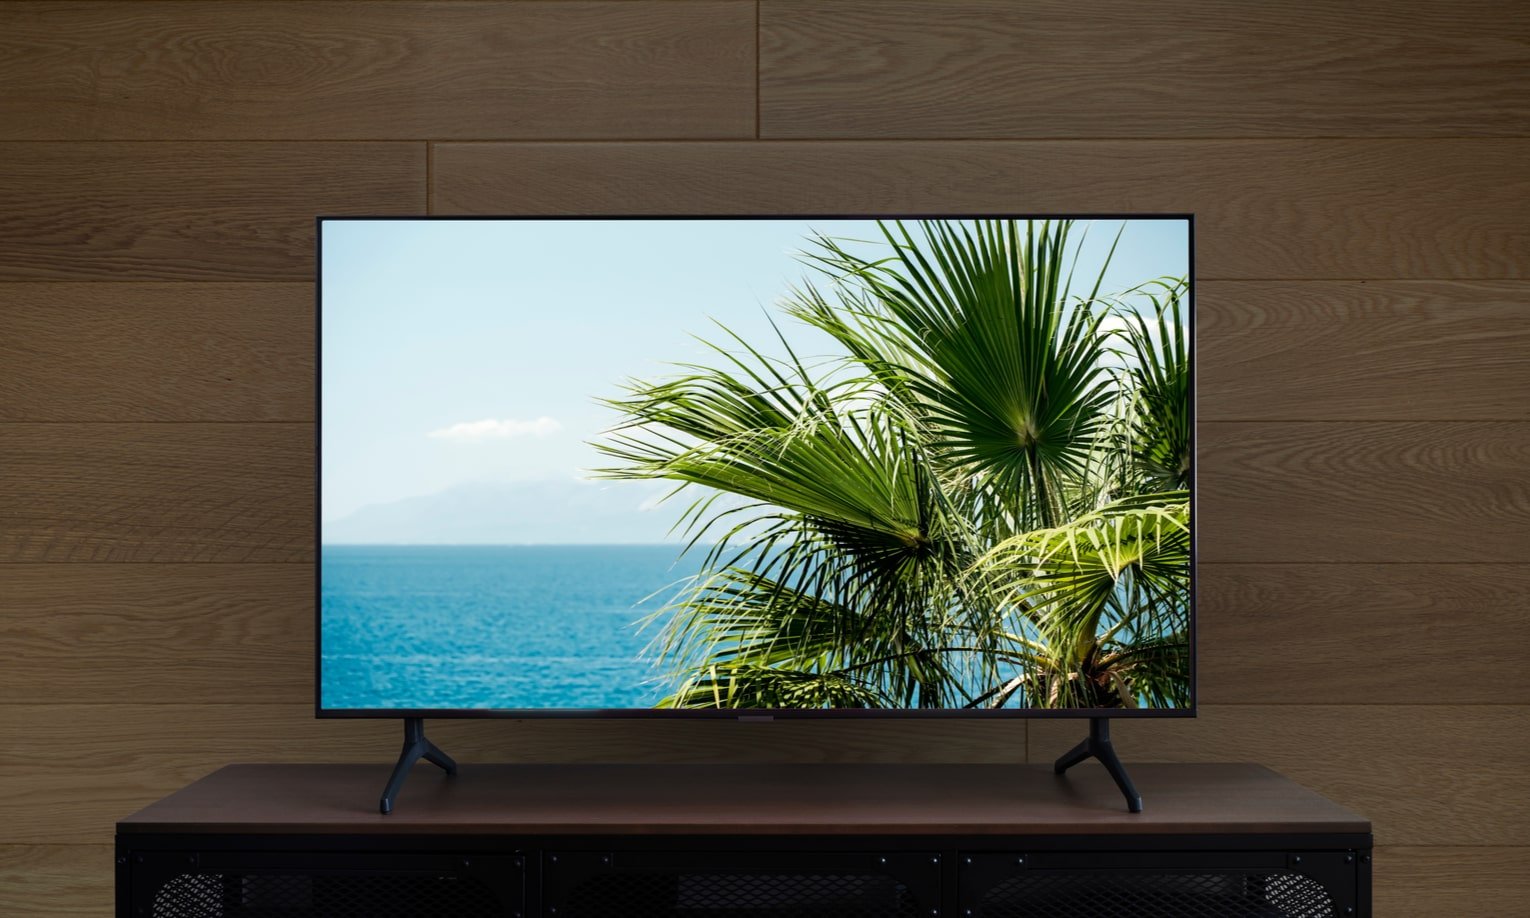 смарт-телевизор с изображением пальм на комоде